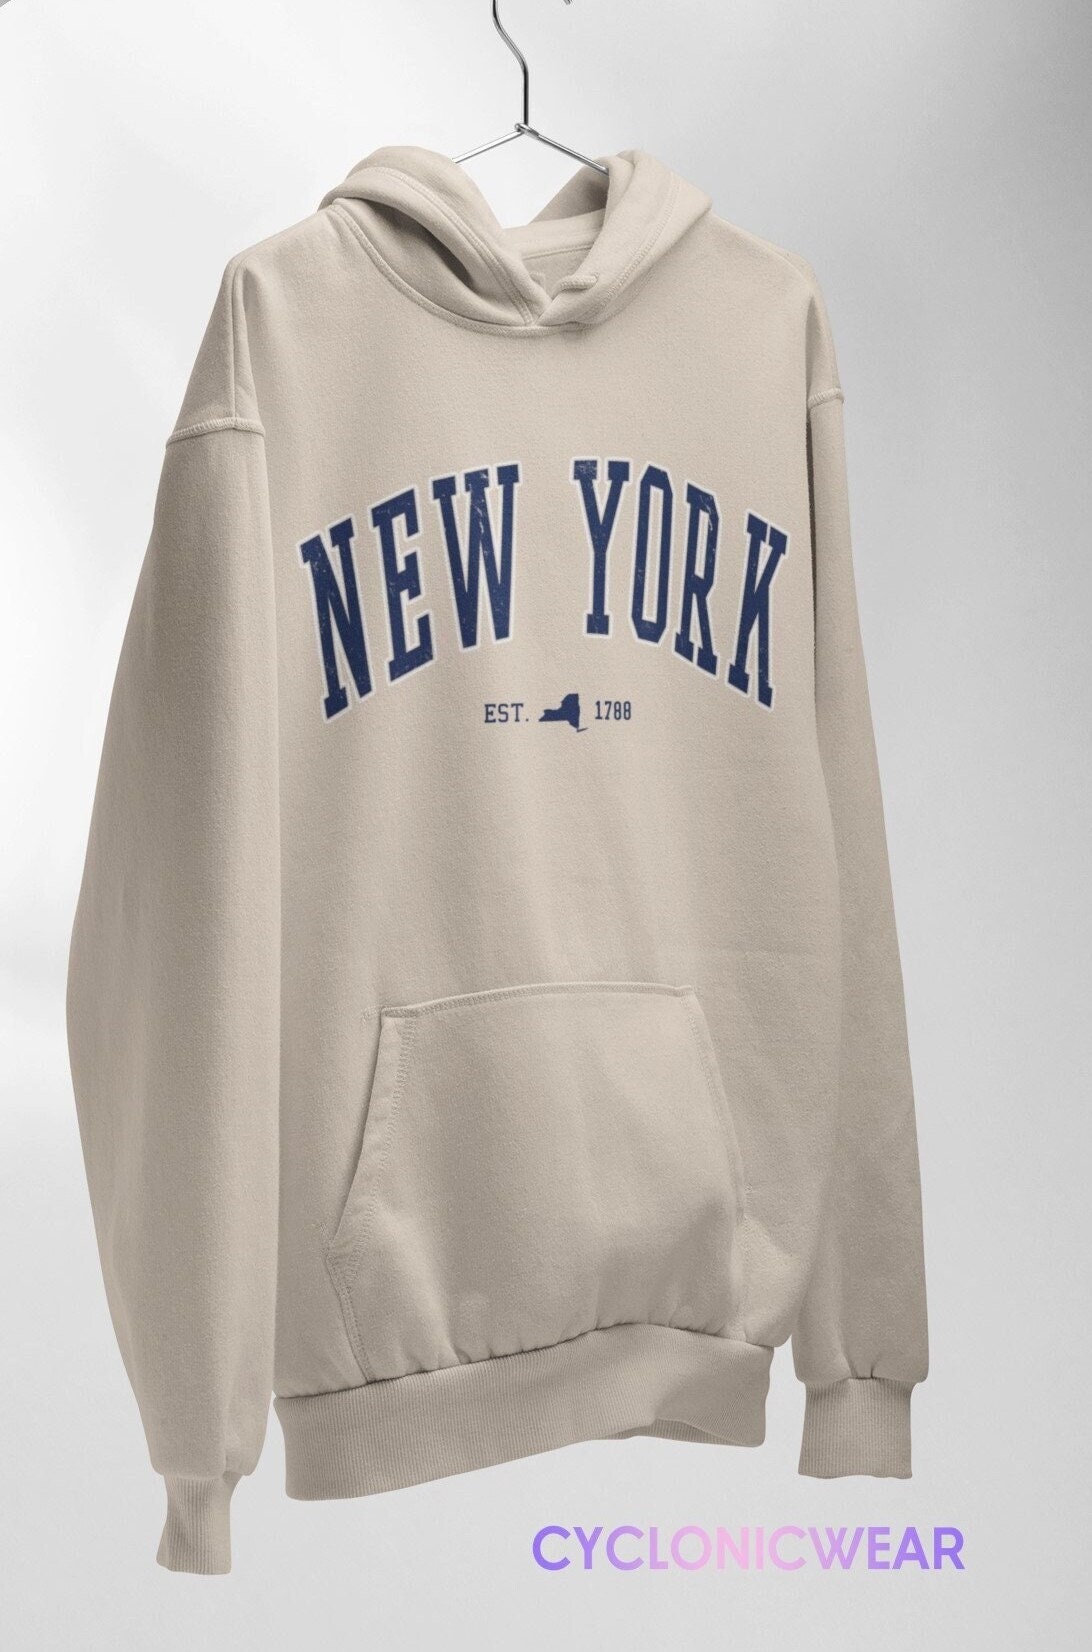 New York College Hoodie, Vintage Style Sweatshirt, New York Fan